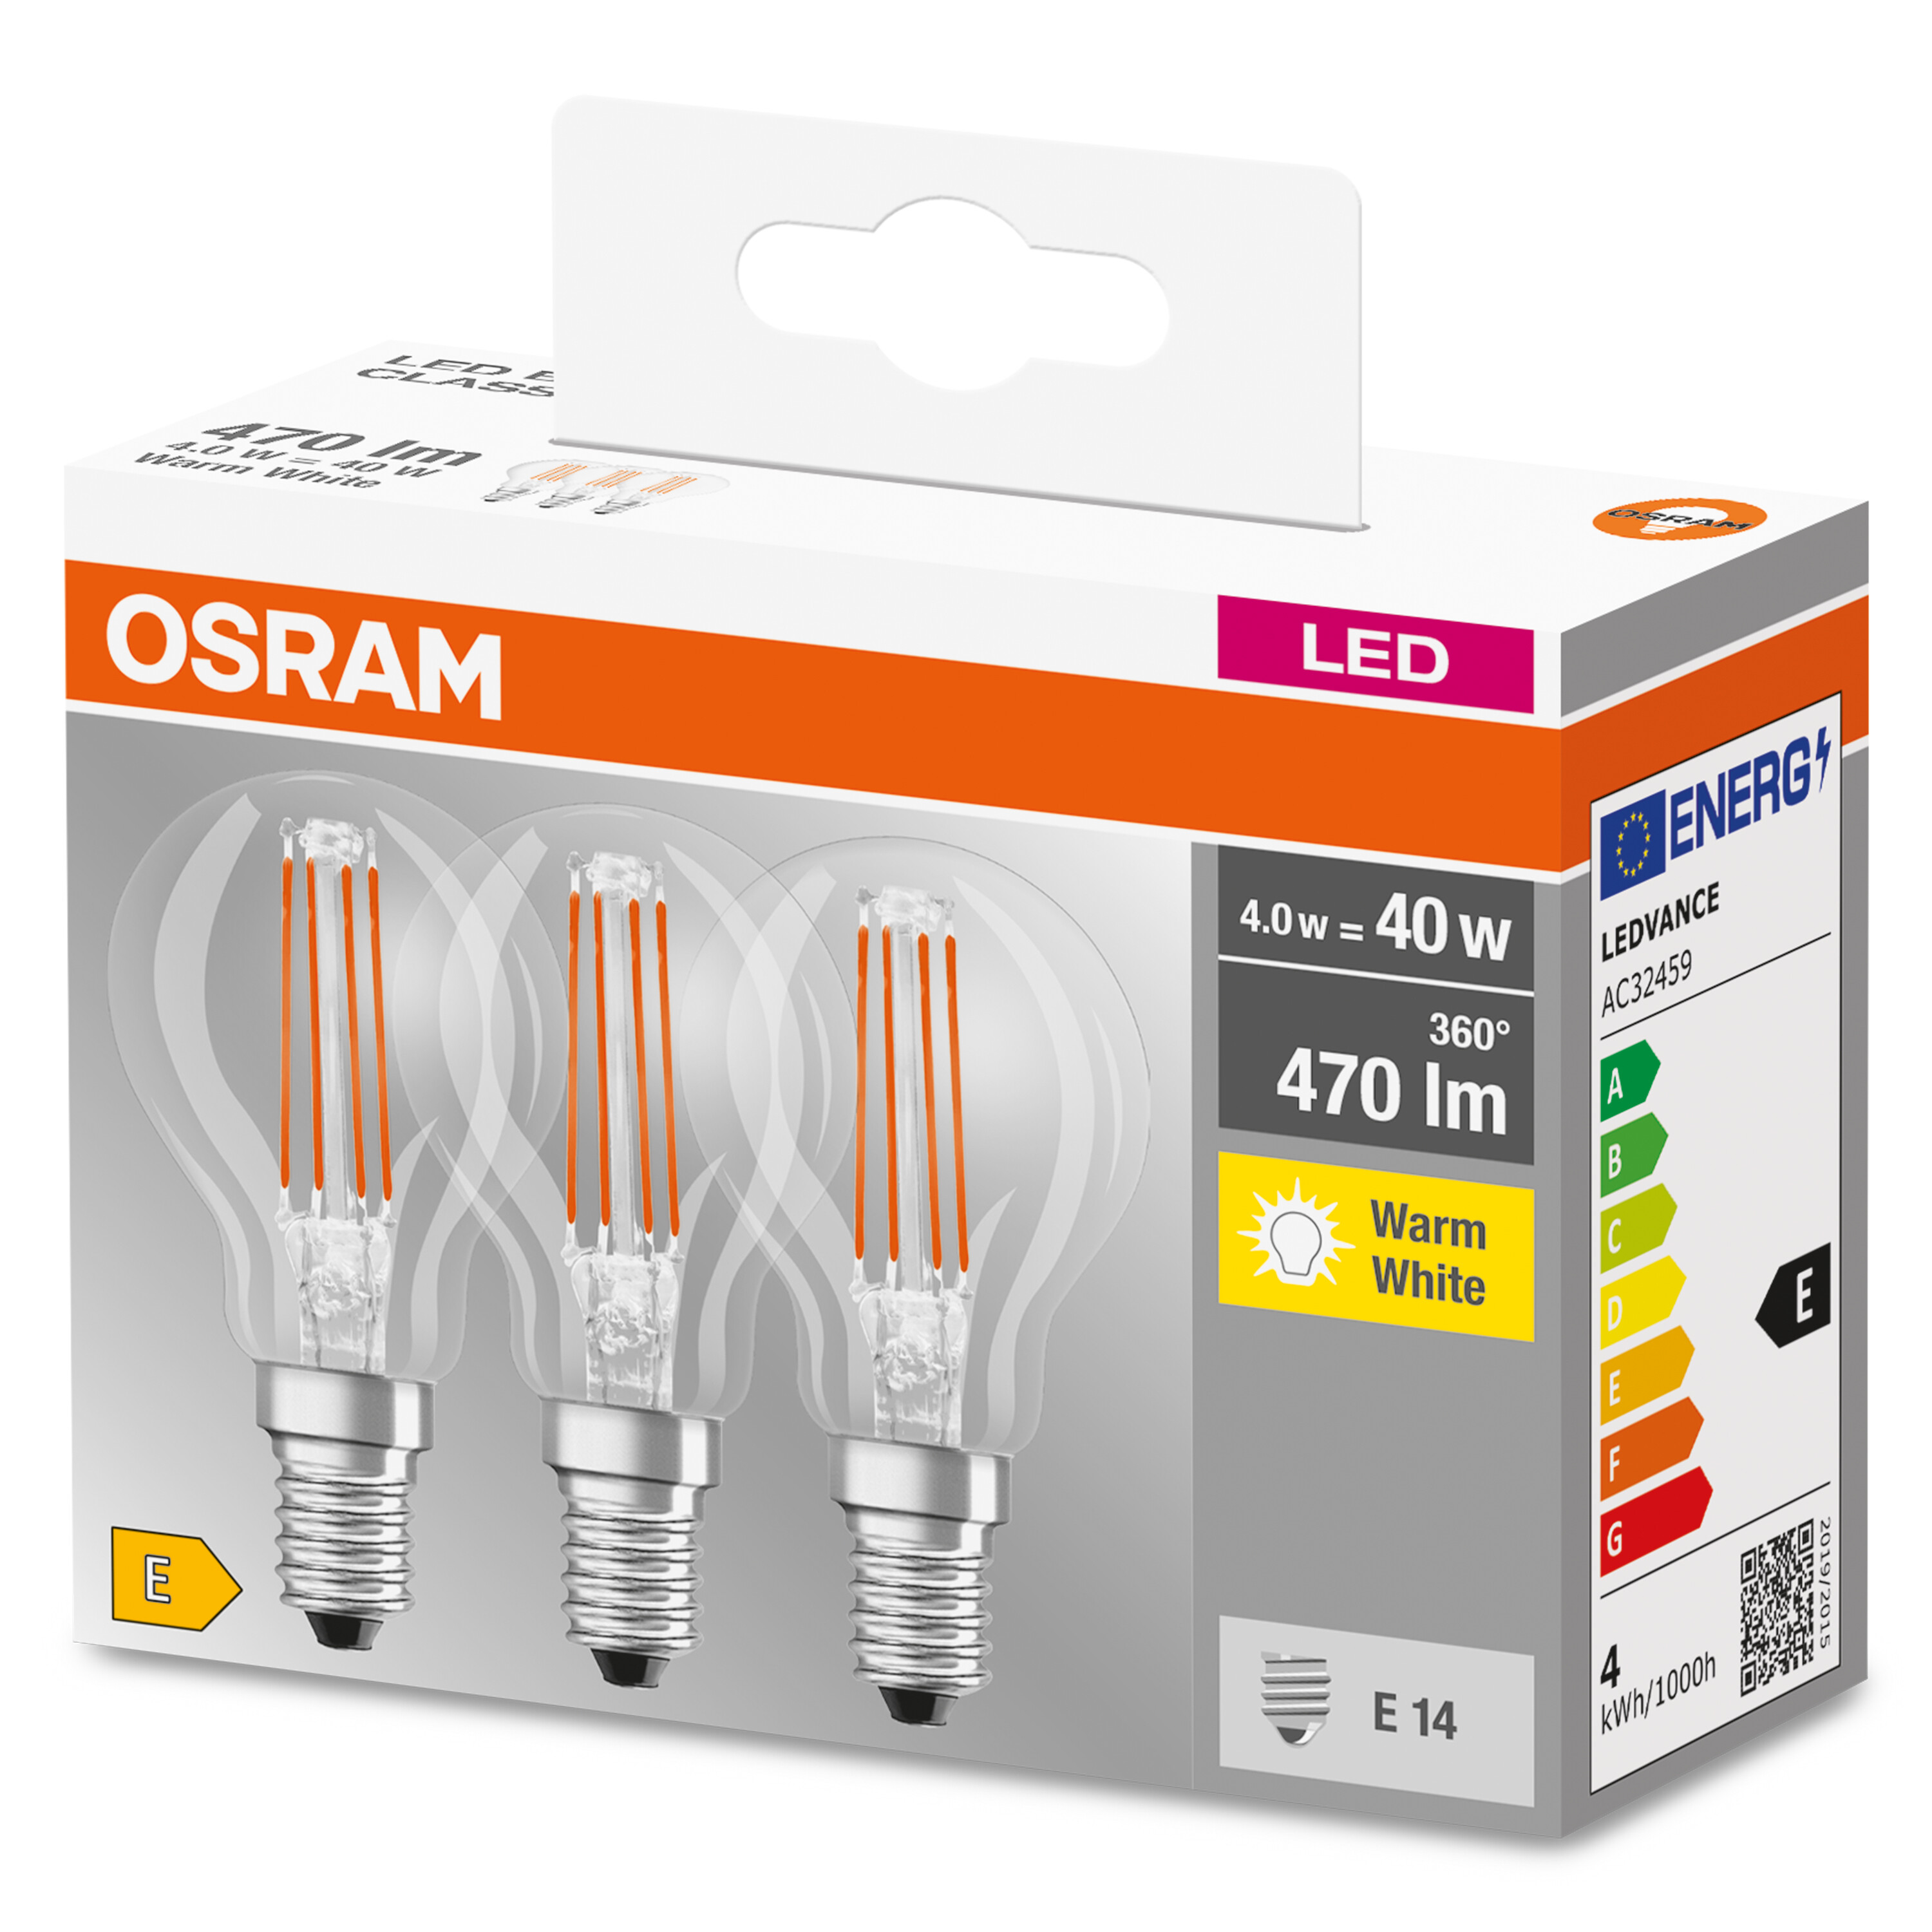 OSRAM  LED LED CLASSIC 470 Lampe BASE P Warmweiß Lumen